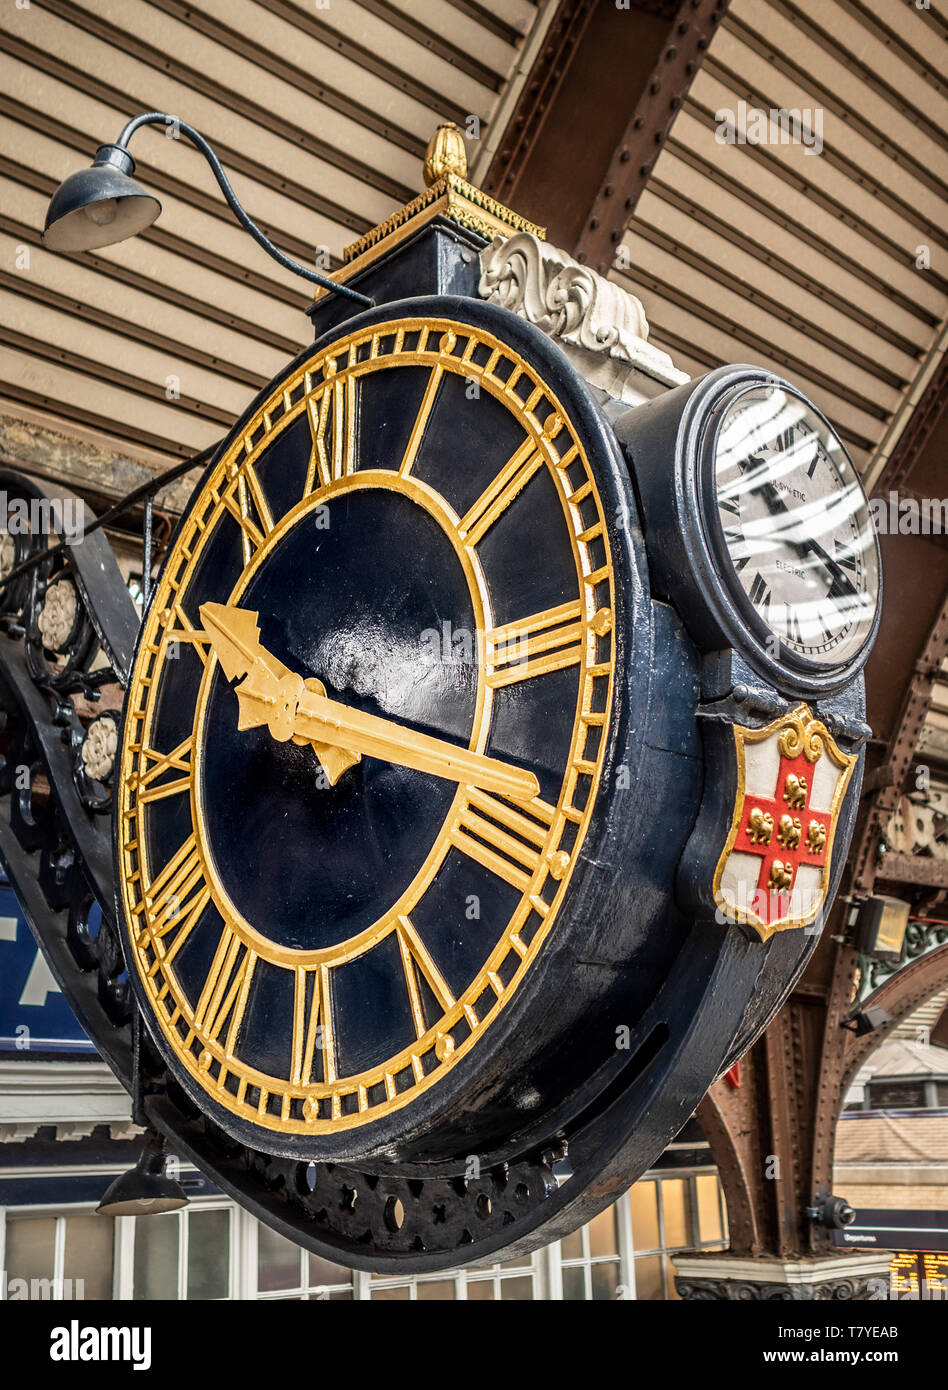 Orologio presso la stazione ferroviaria di York, UK Foto stock - Alamy